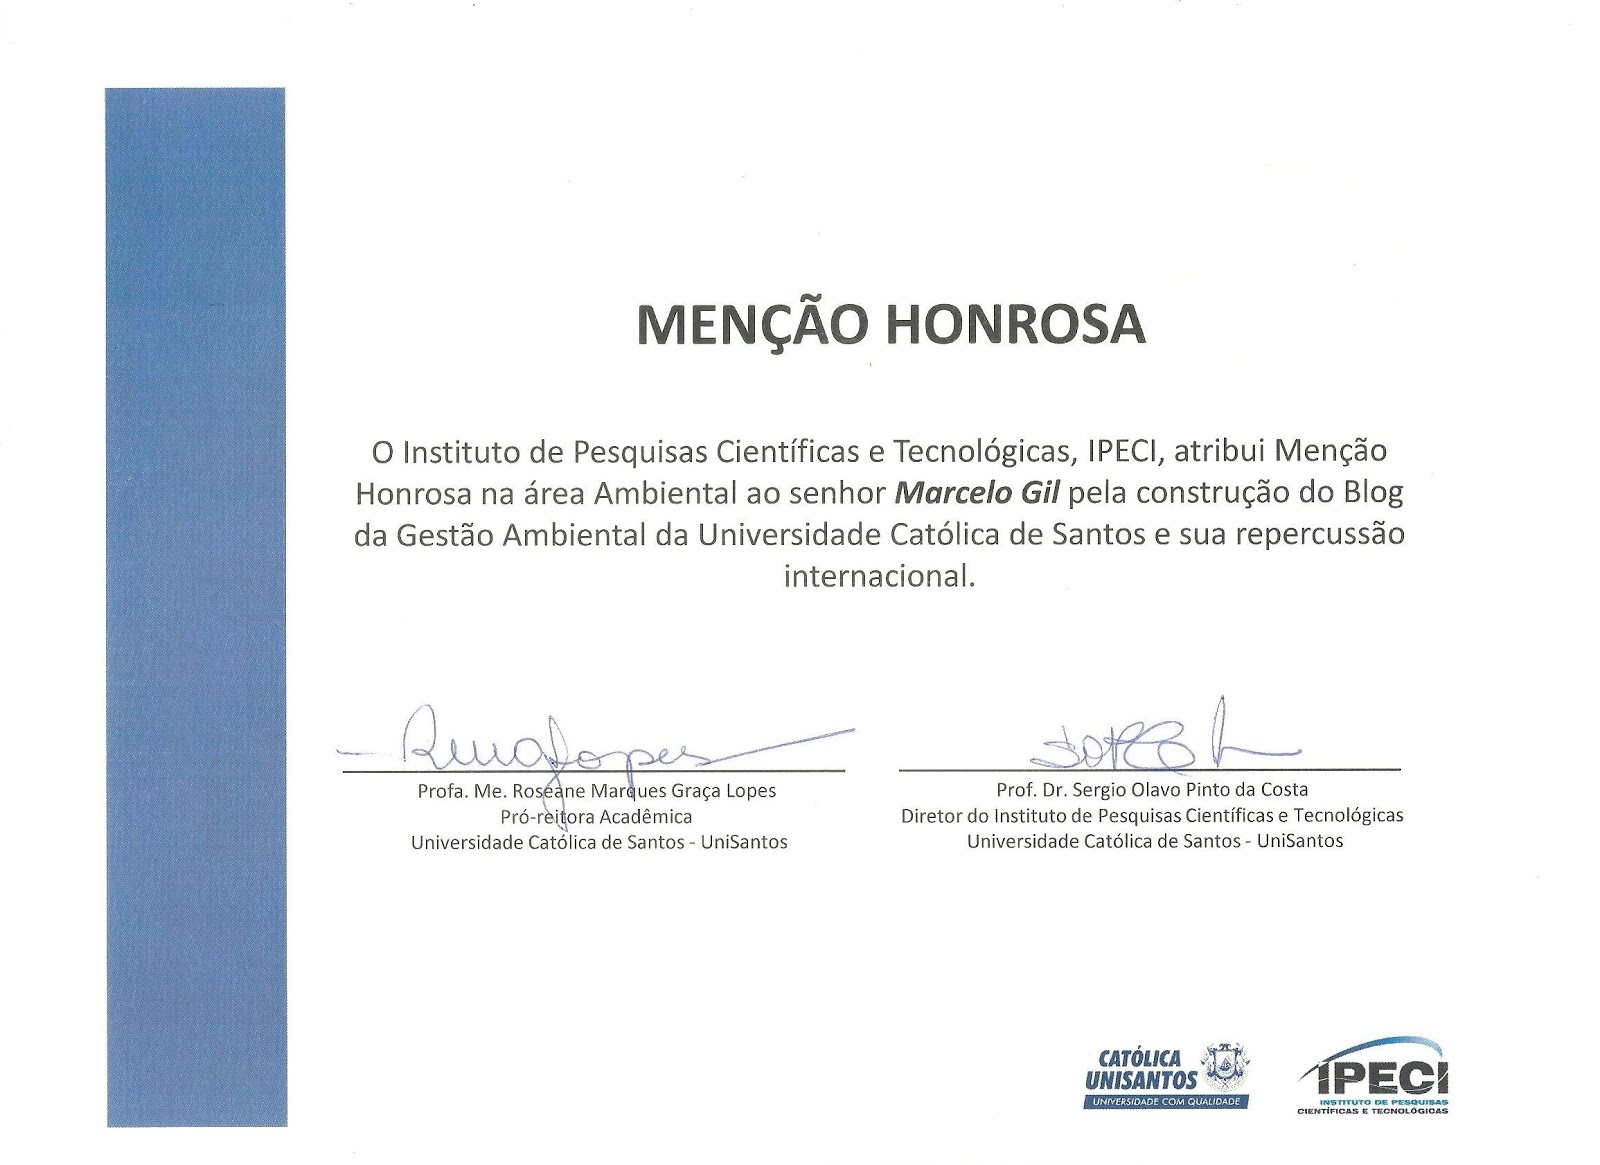 MENÇÃO HONROSA CONCEDIDA PELA REITORIA DA UNIVERSIDADE CATÓLICA DE SANTOS À MARCELO GIL - 2013